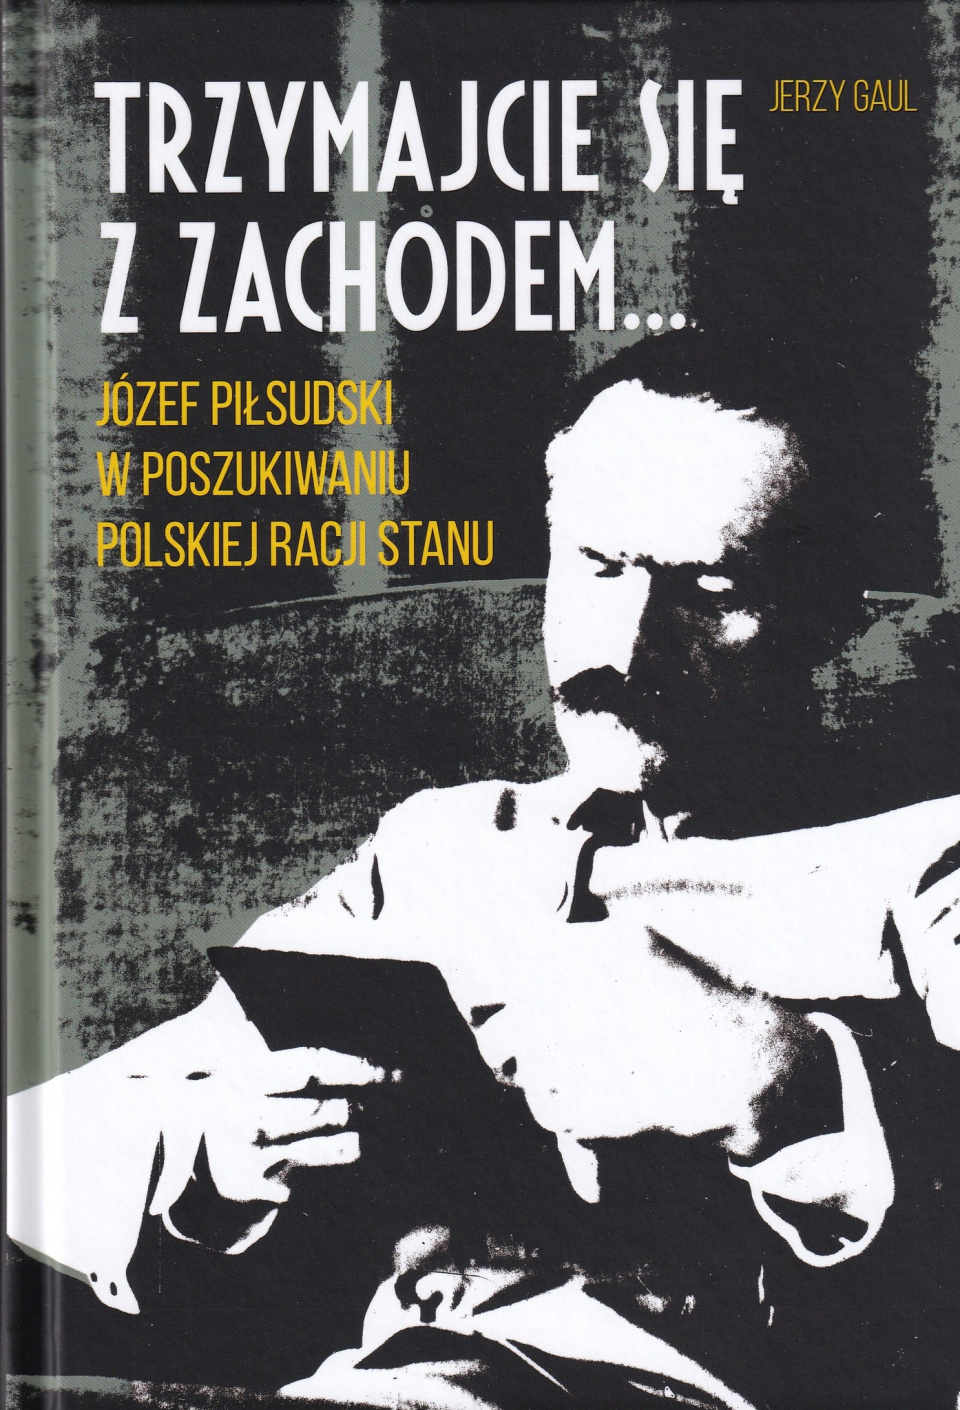 Jerzy Gaul "Trzymajcie się z Zachodem. Józef Piłsudski w poszukiwaniu polskiej racji stanu" [fot. źródło:facebook.com/AGAD.Warszawa/]